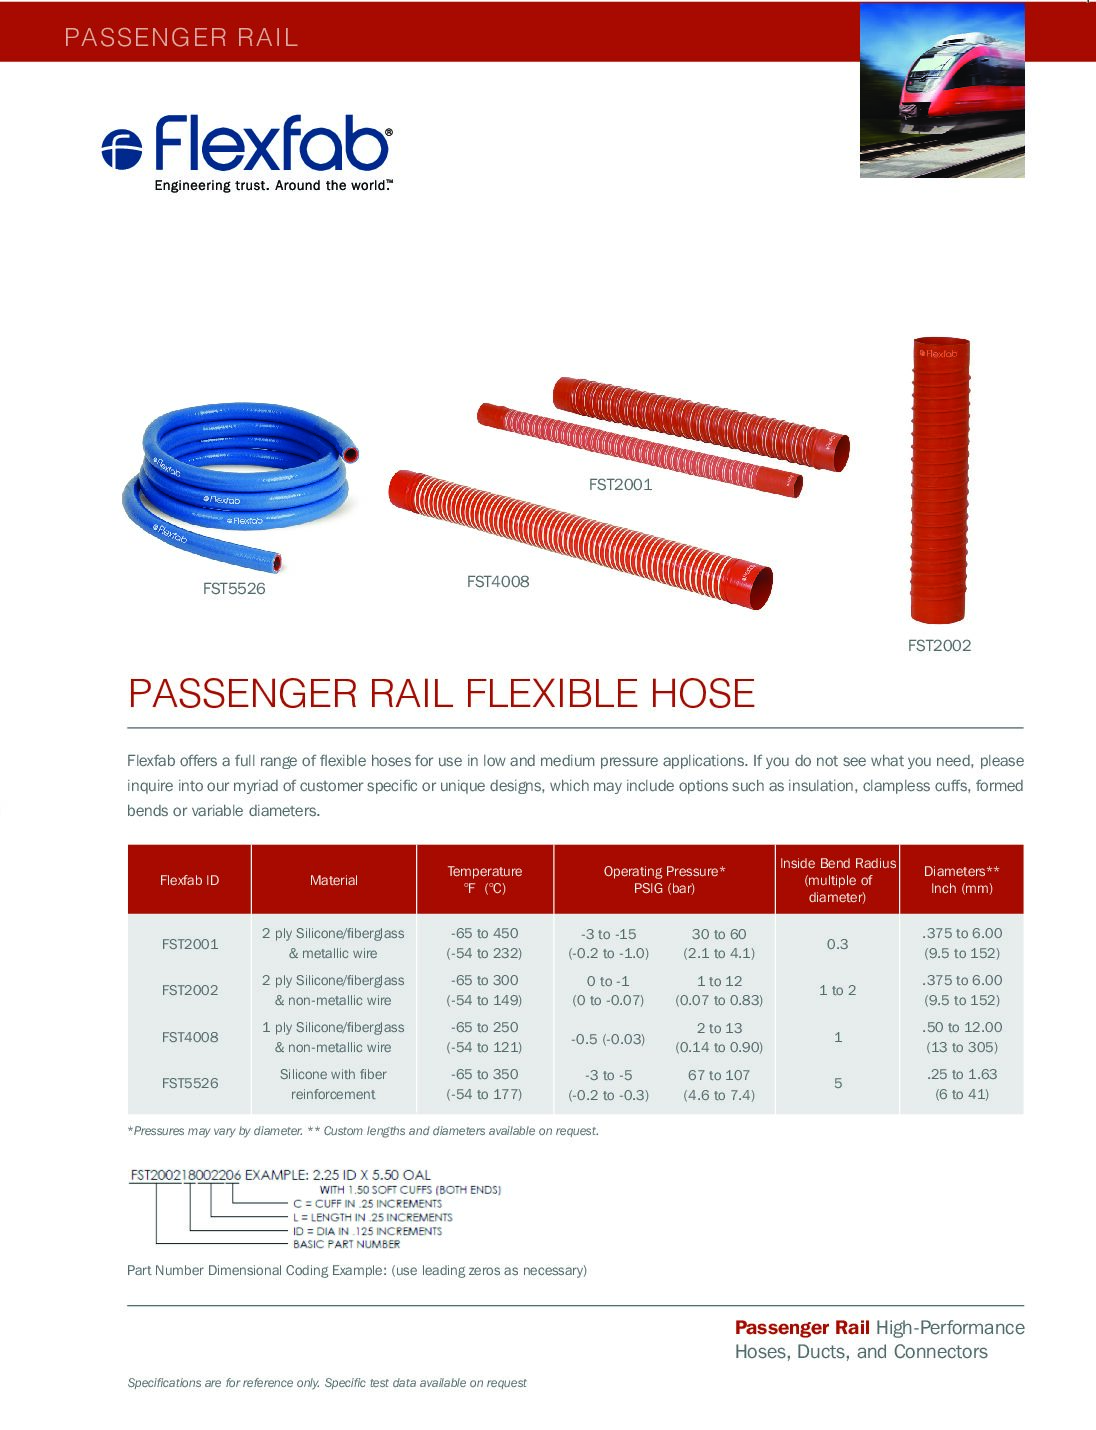 Flexible Hoses for Passenger Rail